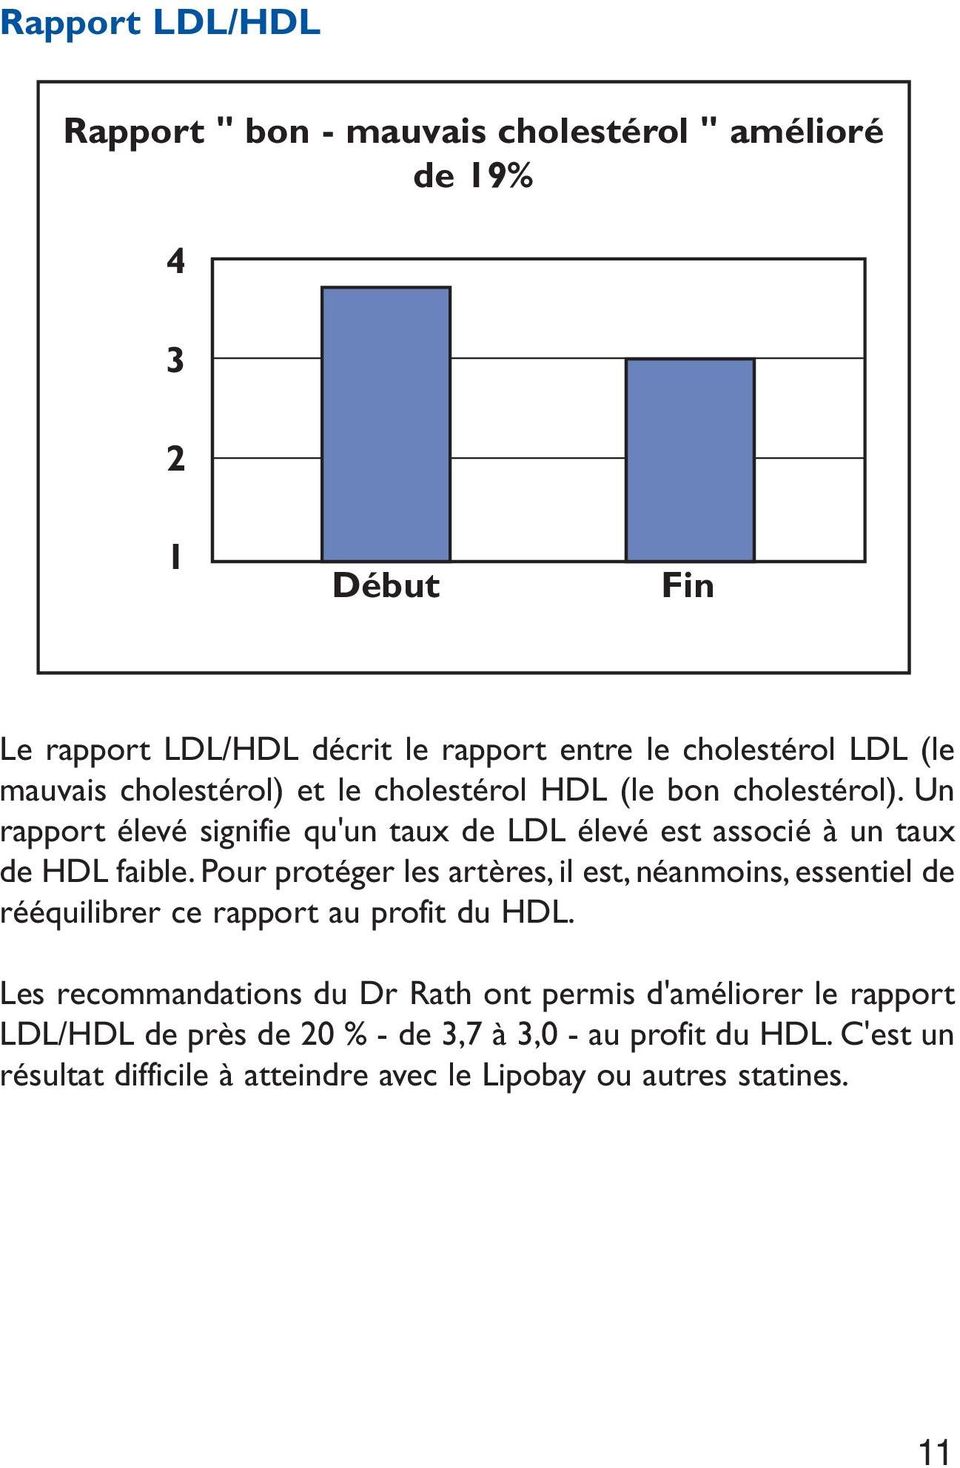 Un rapport élevé signifie qu'un taux de LDL élevé est associé à un taux de HDL faible.